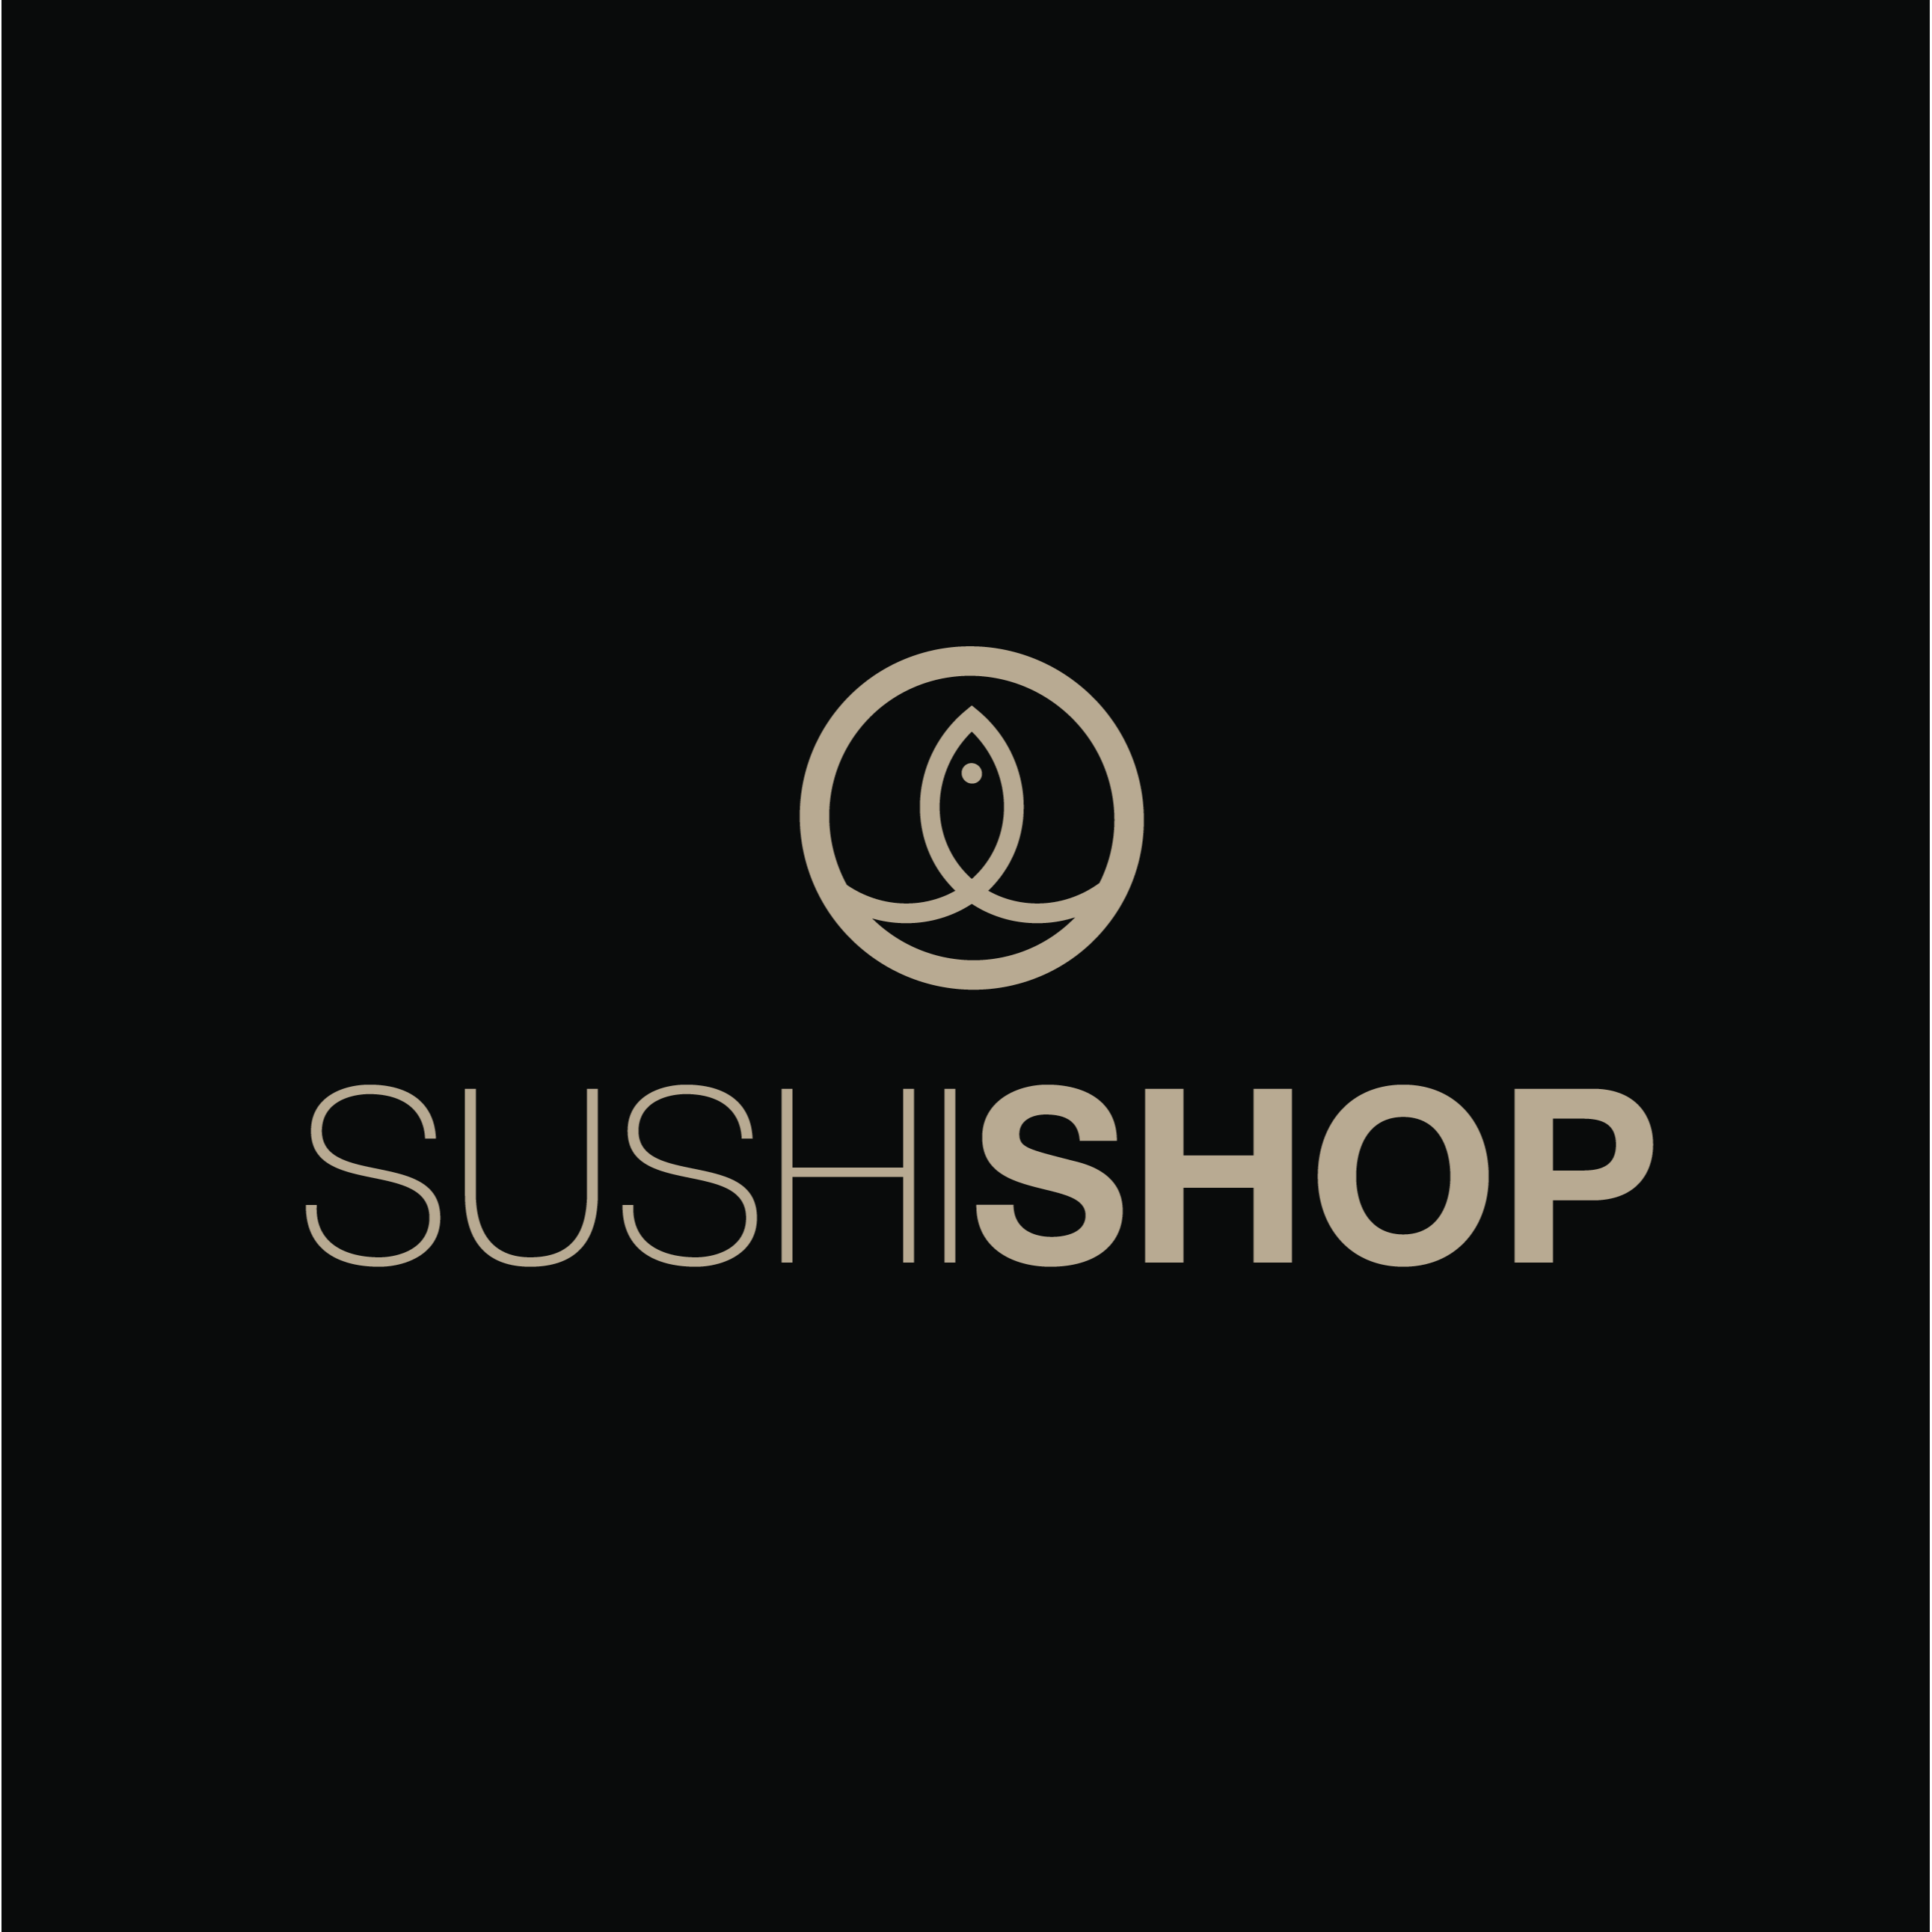 Sushi Shop - London, London W2 5SH - 020 7486 1153 | ShowMeLocal.com